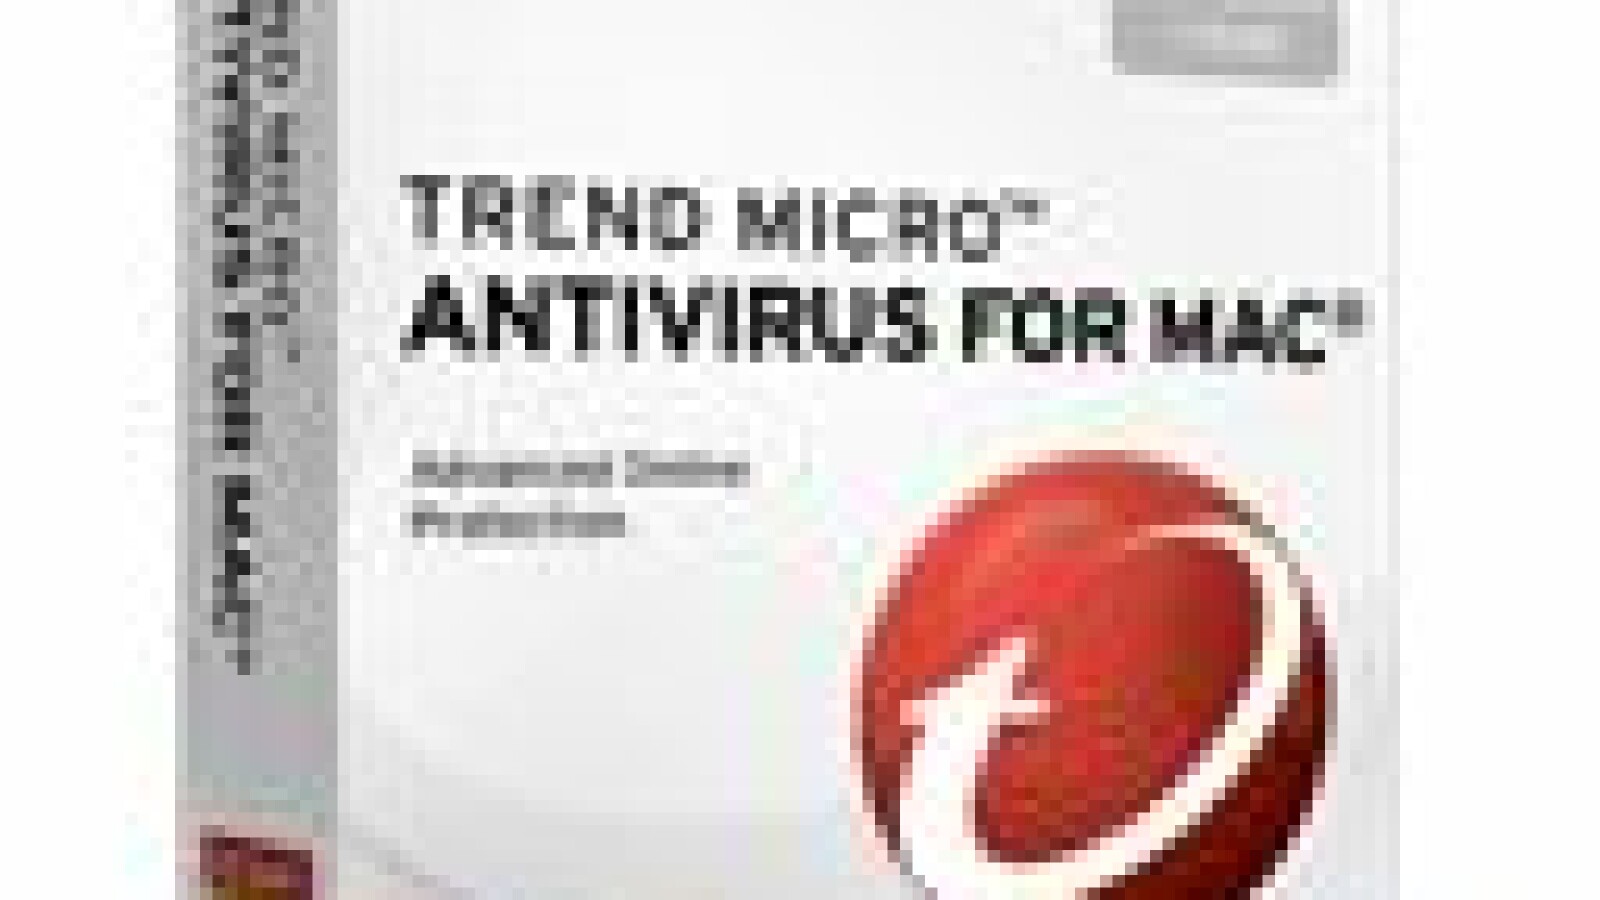 trend micro antivirus mac download